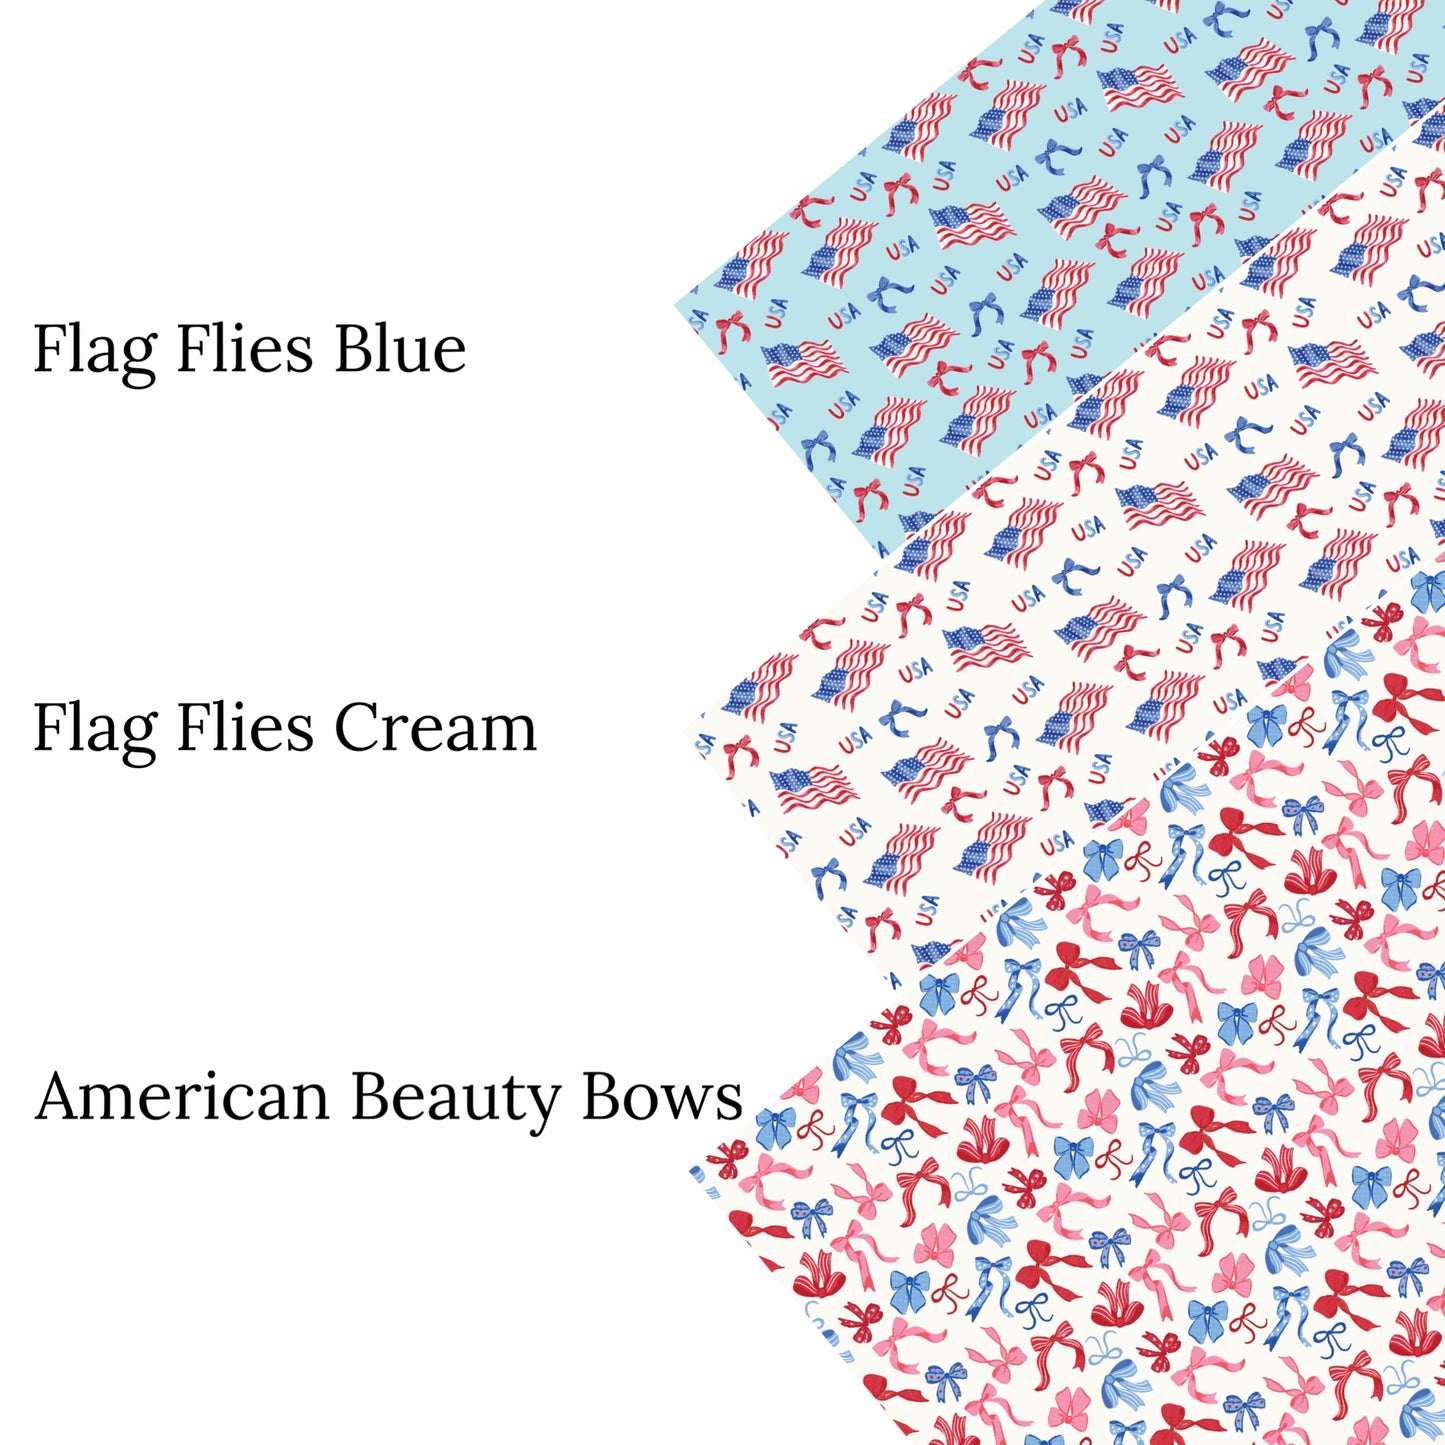 Flag Flies Blue Faux Leather Sheets